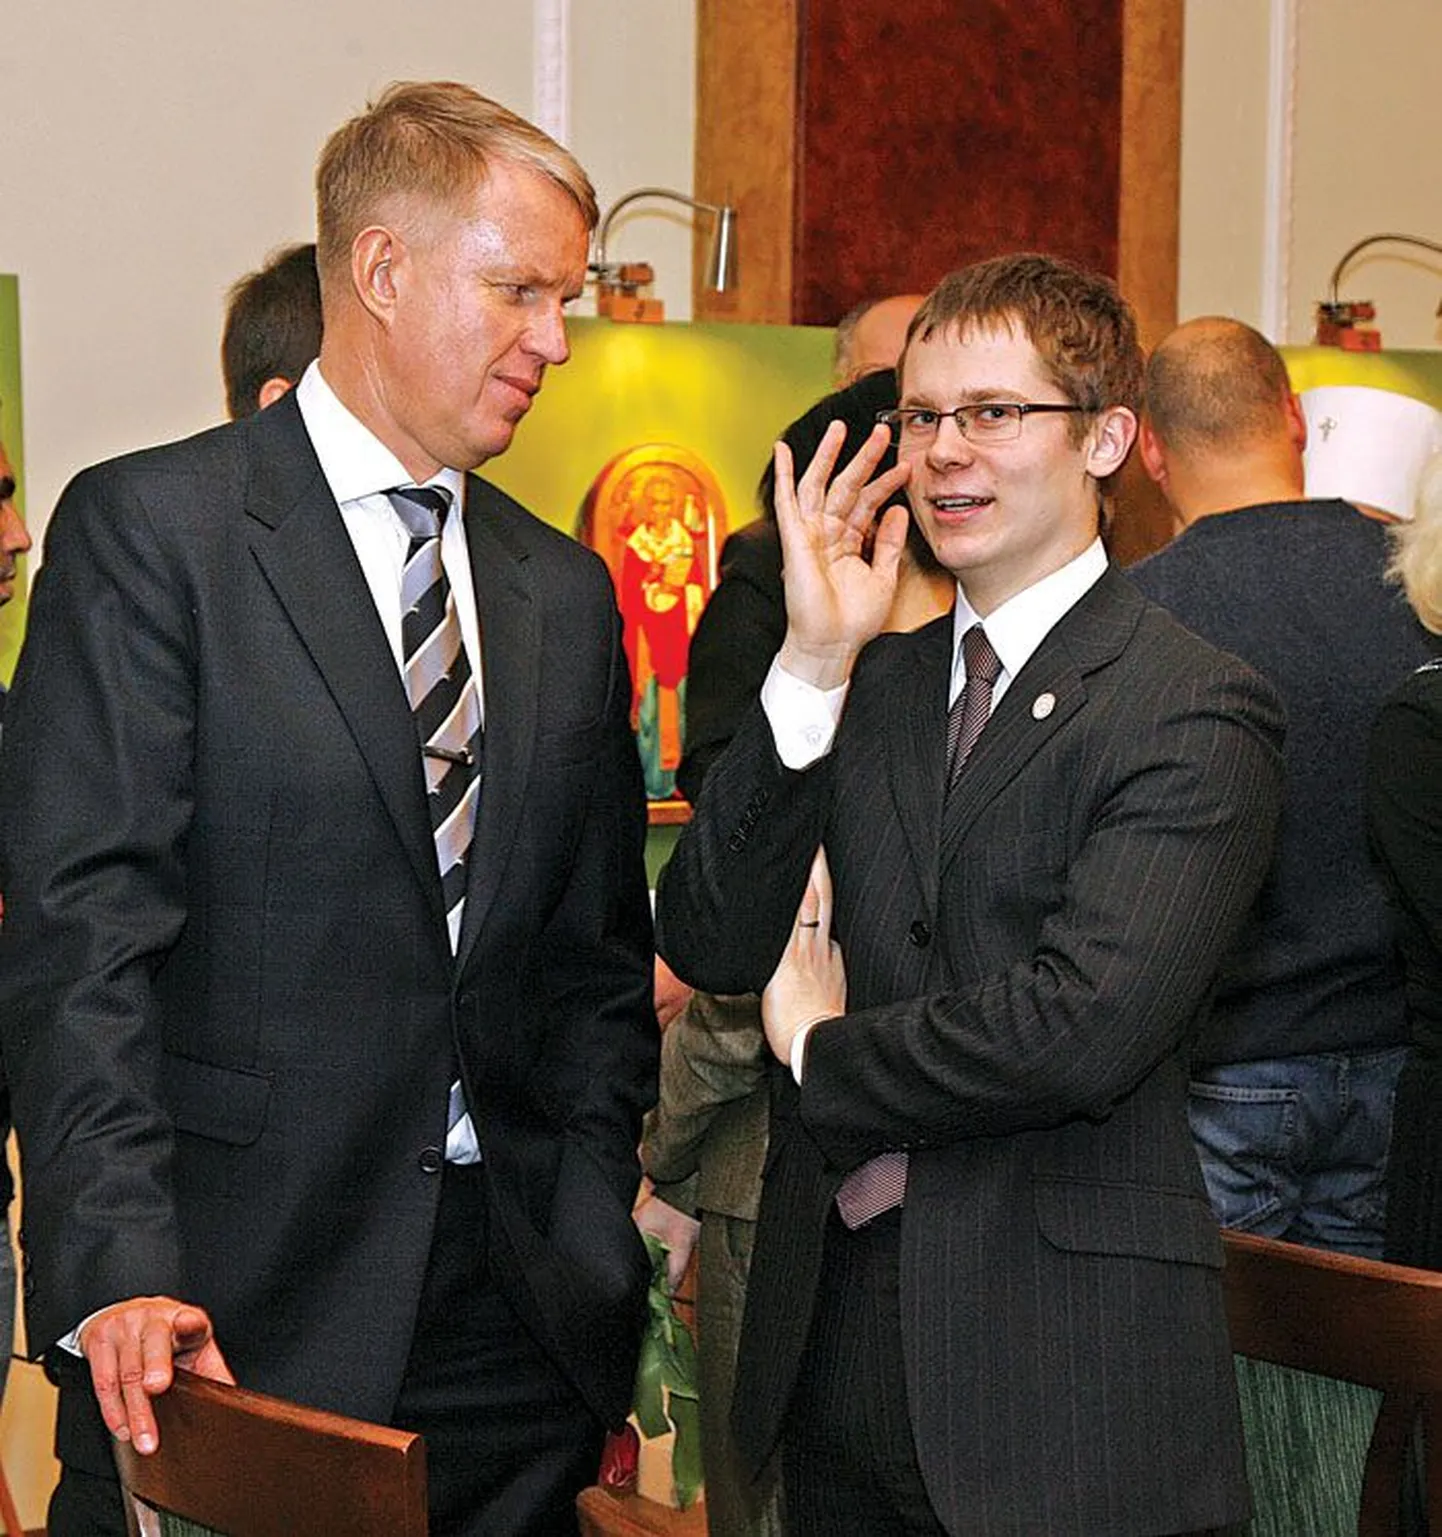 Kohtu otsusel on Jüri Vilmsi Sihtasutuse juhatuse liige Elmar Sepp (vasakul) süüdi korduvas pistise võtmisele kihutamises. 2008. aastal esindasid nad Tarmo Lausinguga (paremal)parteid pidulikel üritustel.